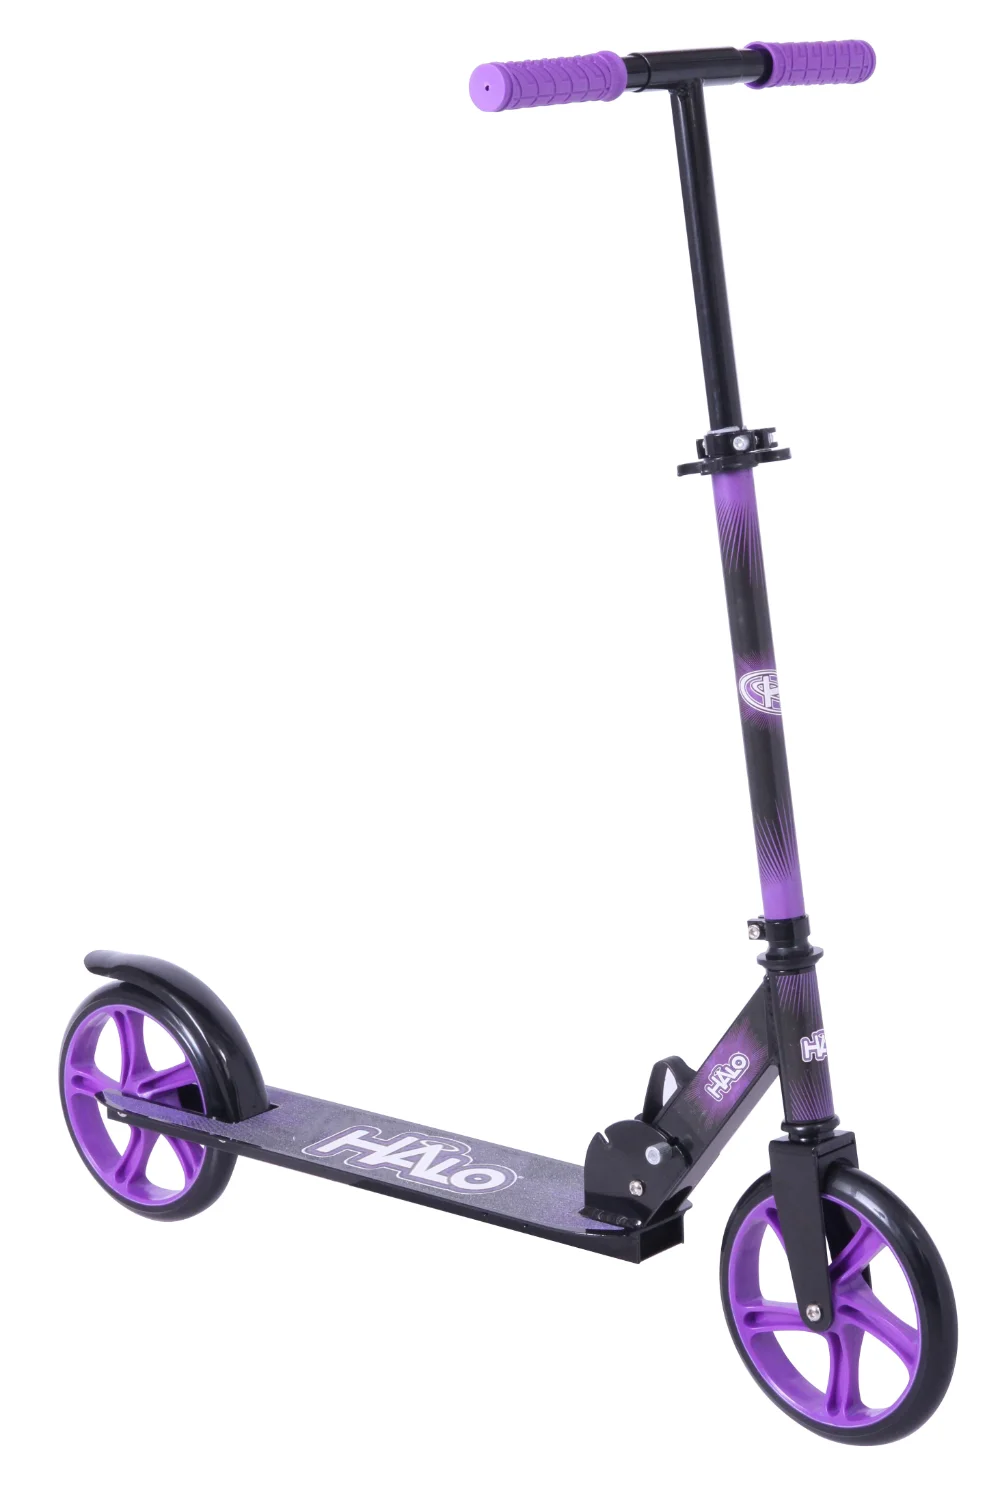 Big Wheel Kick Scooter - Grün - für alle Fahrer bis zu 220 lbs - Unisex Kids Scooter